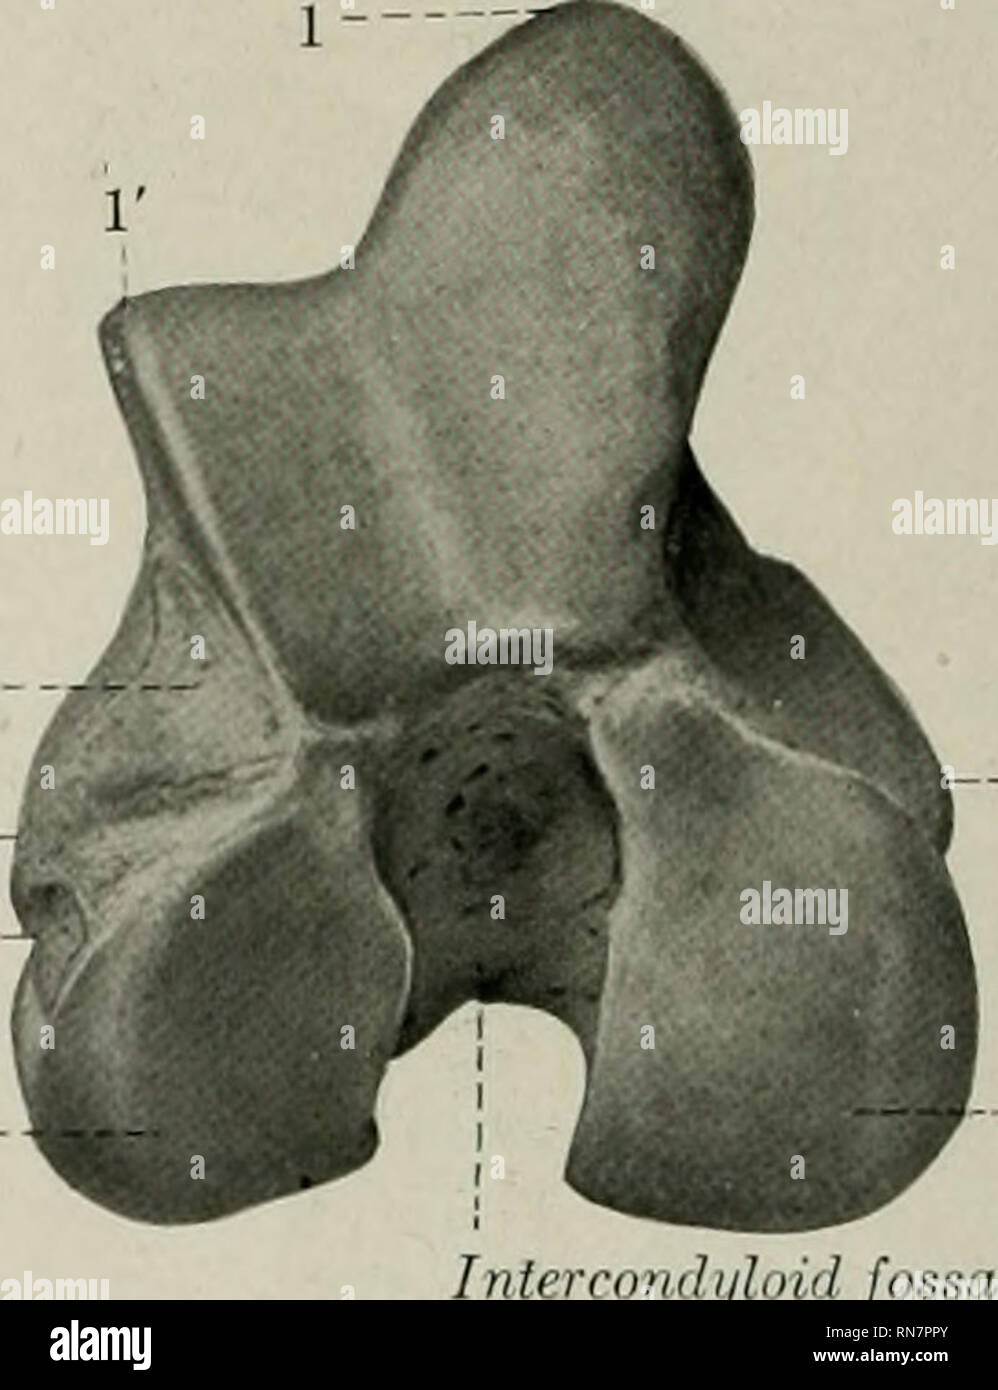 . L'anatomie de l'animal domestique. Anatomie vétérinaire. Fig. 93.-extrémité proximale du bon cheval ;  Fin,vue. 1, tête ; 2, fovea capitis : 3, du cou ; 4, .5, un postérieure de trochanter majo. Intercondyloid jo. Fig. 94.-extrémité distale du fémur droit de cheval ; vue en bout. 1, 1', crêtes médial et latéral de trochlée ; 2, 2', condyle médial et latéral ; 3, 3', epicondyles médial et latéral ; 4, 5 ; Fosse de l'extenseur, la dépression d'origine du popliteus. lateralis) est moins distincte ; il présente une marque lorsque le ligament latéral est jointe, ci-dessous et derrière lequel il y a une dépression (Fossa muscul Banque D'Images